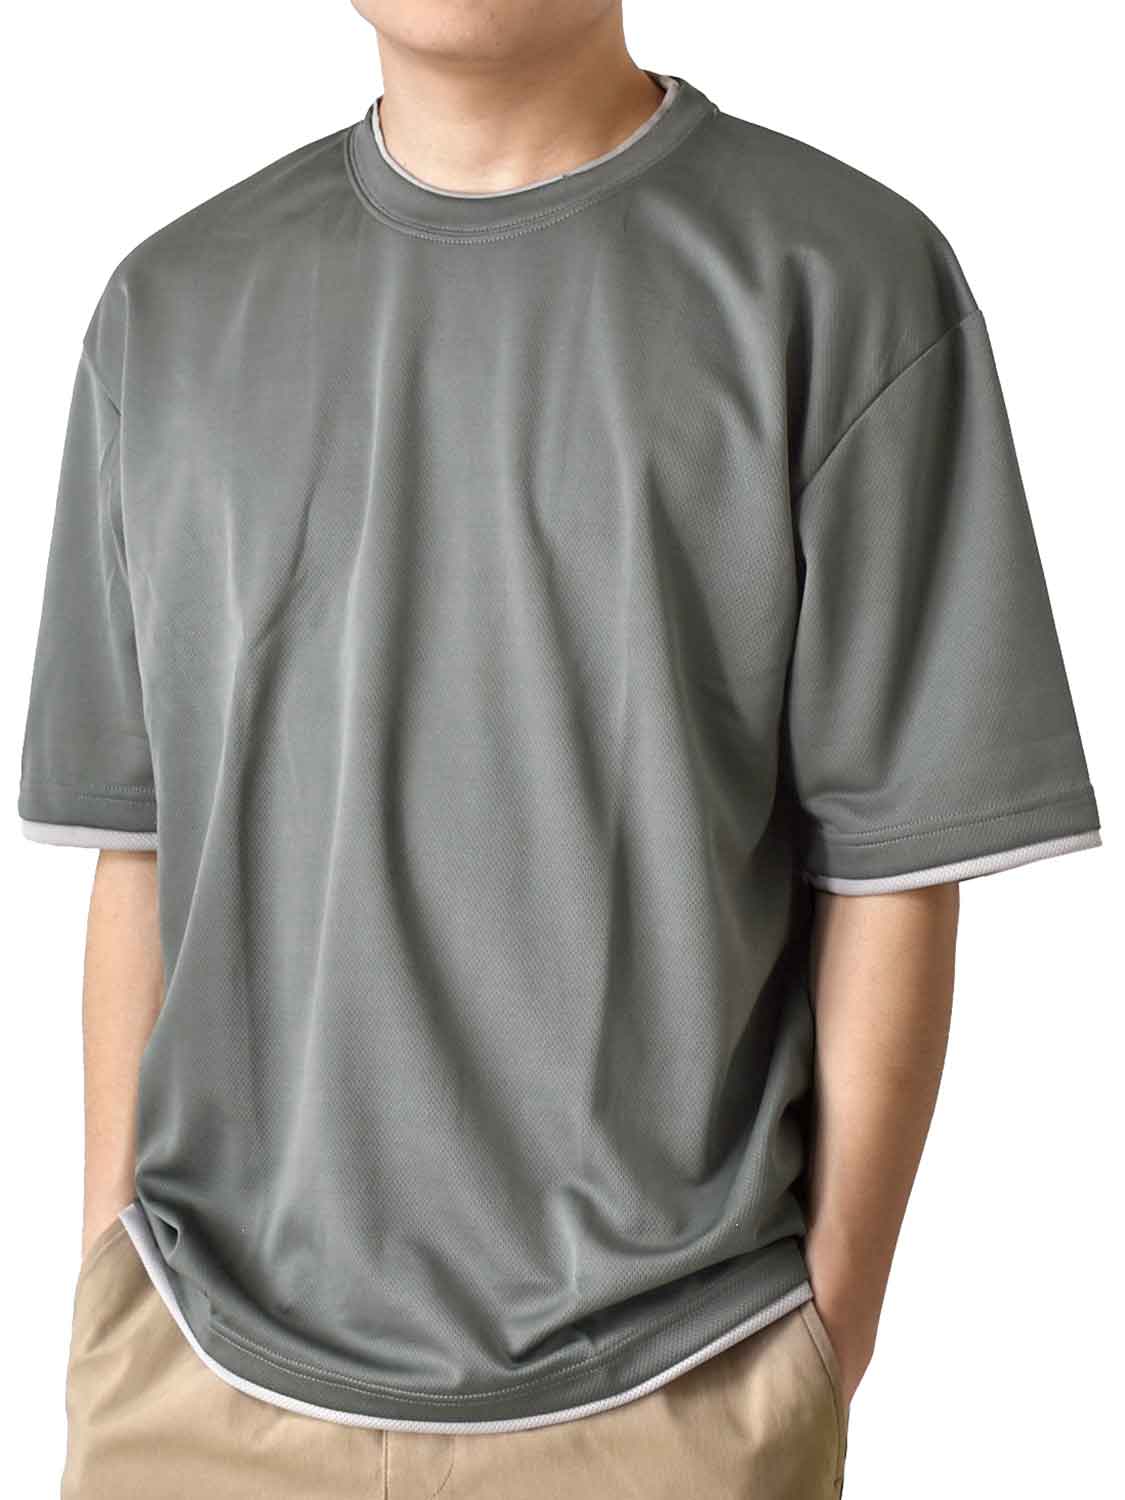 Tシャツ メンズ 5分袖 ドライストレッチ 重ね着風 ワイドシルエット クルーネック 送料無料 通販...